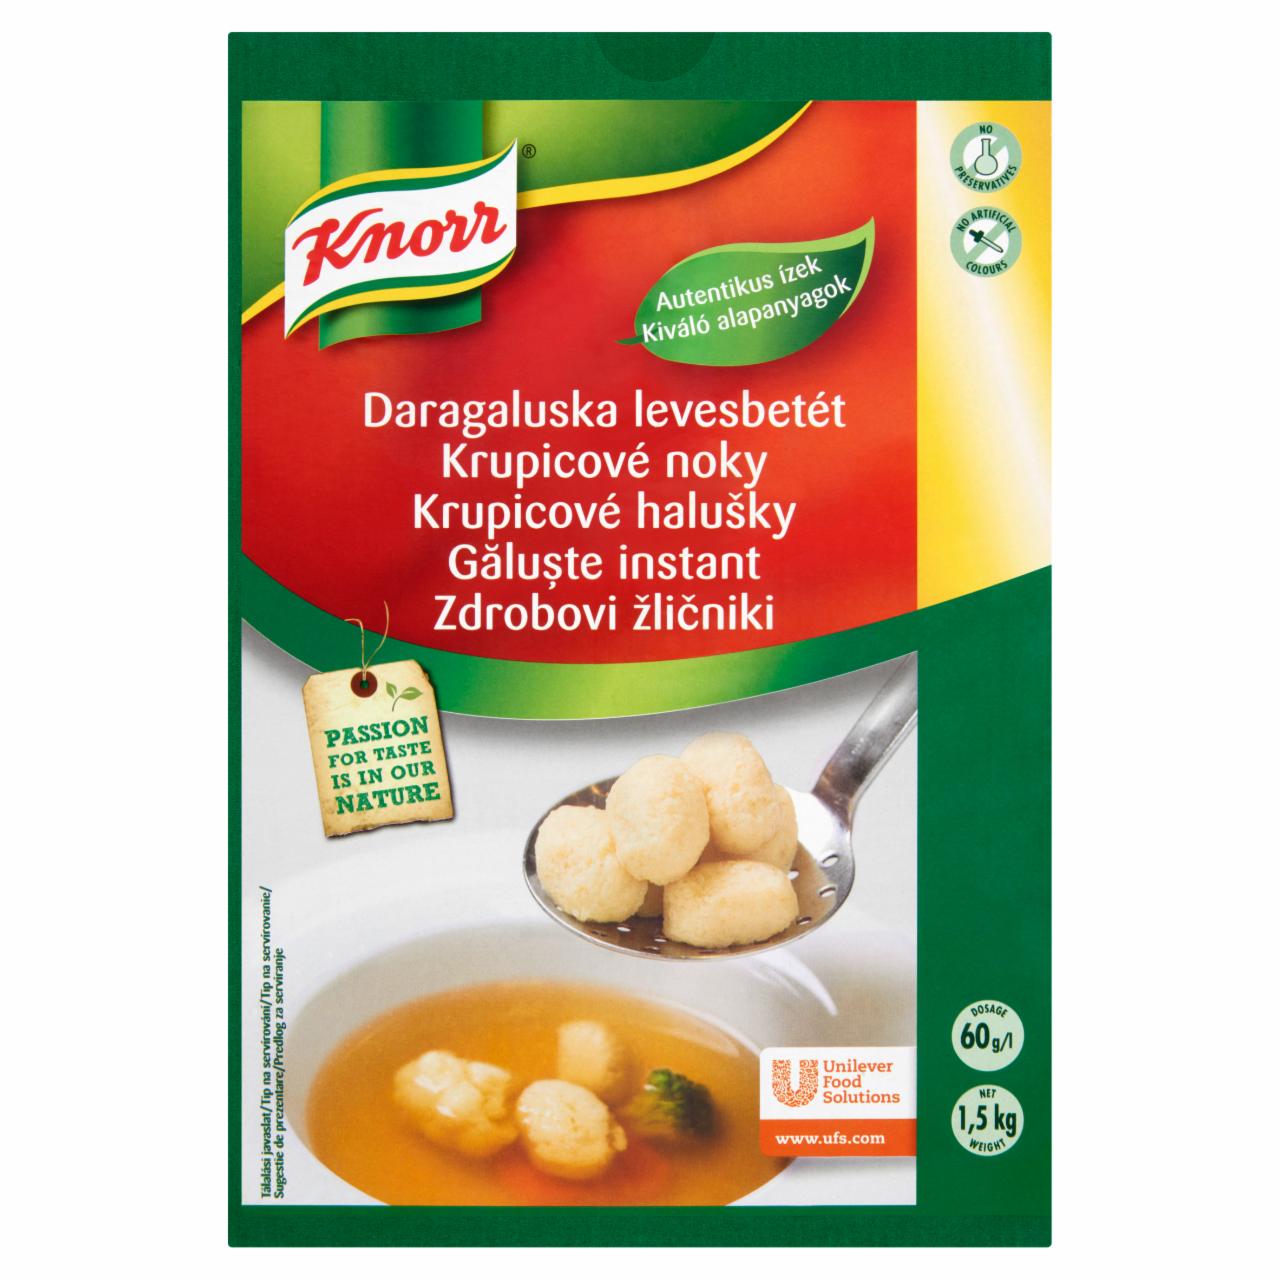 Képek - Knorr daragaluska levesbetét 1,5 kg